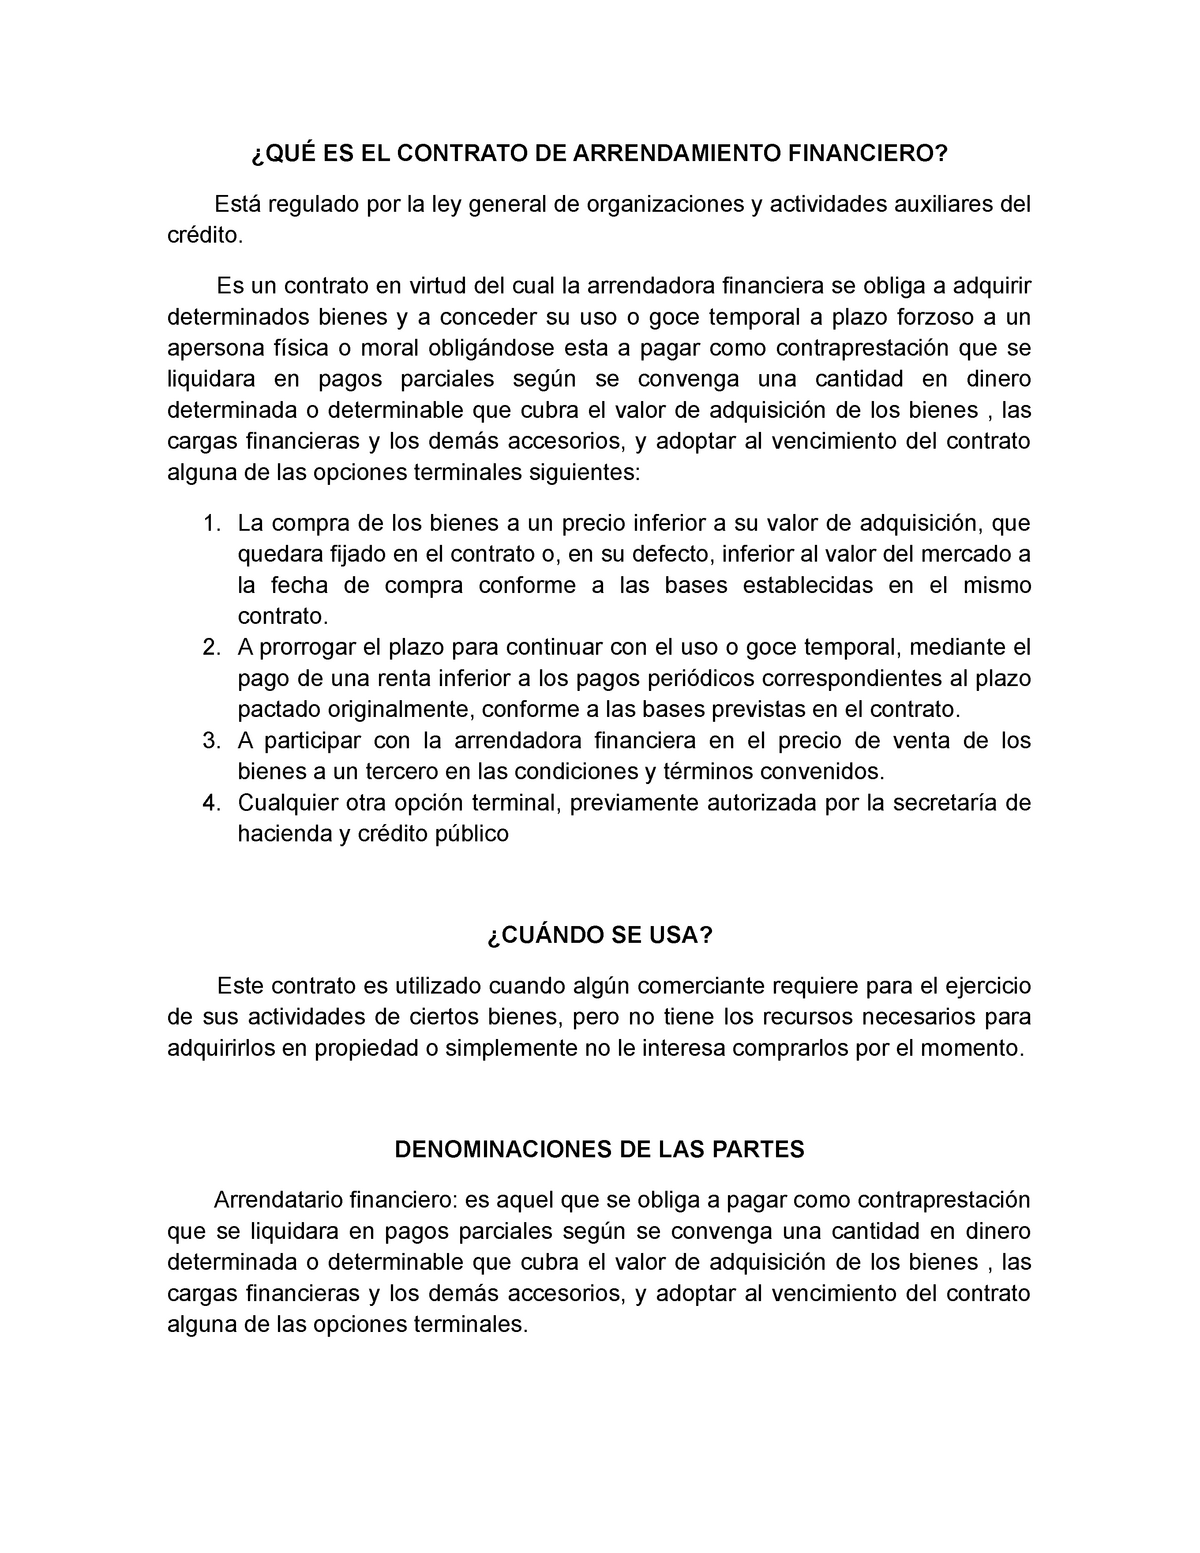 Contrato De Arrendamiento Financiero Es El Contrato De Arrendamiento Financiero Regulado Por 5501